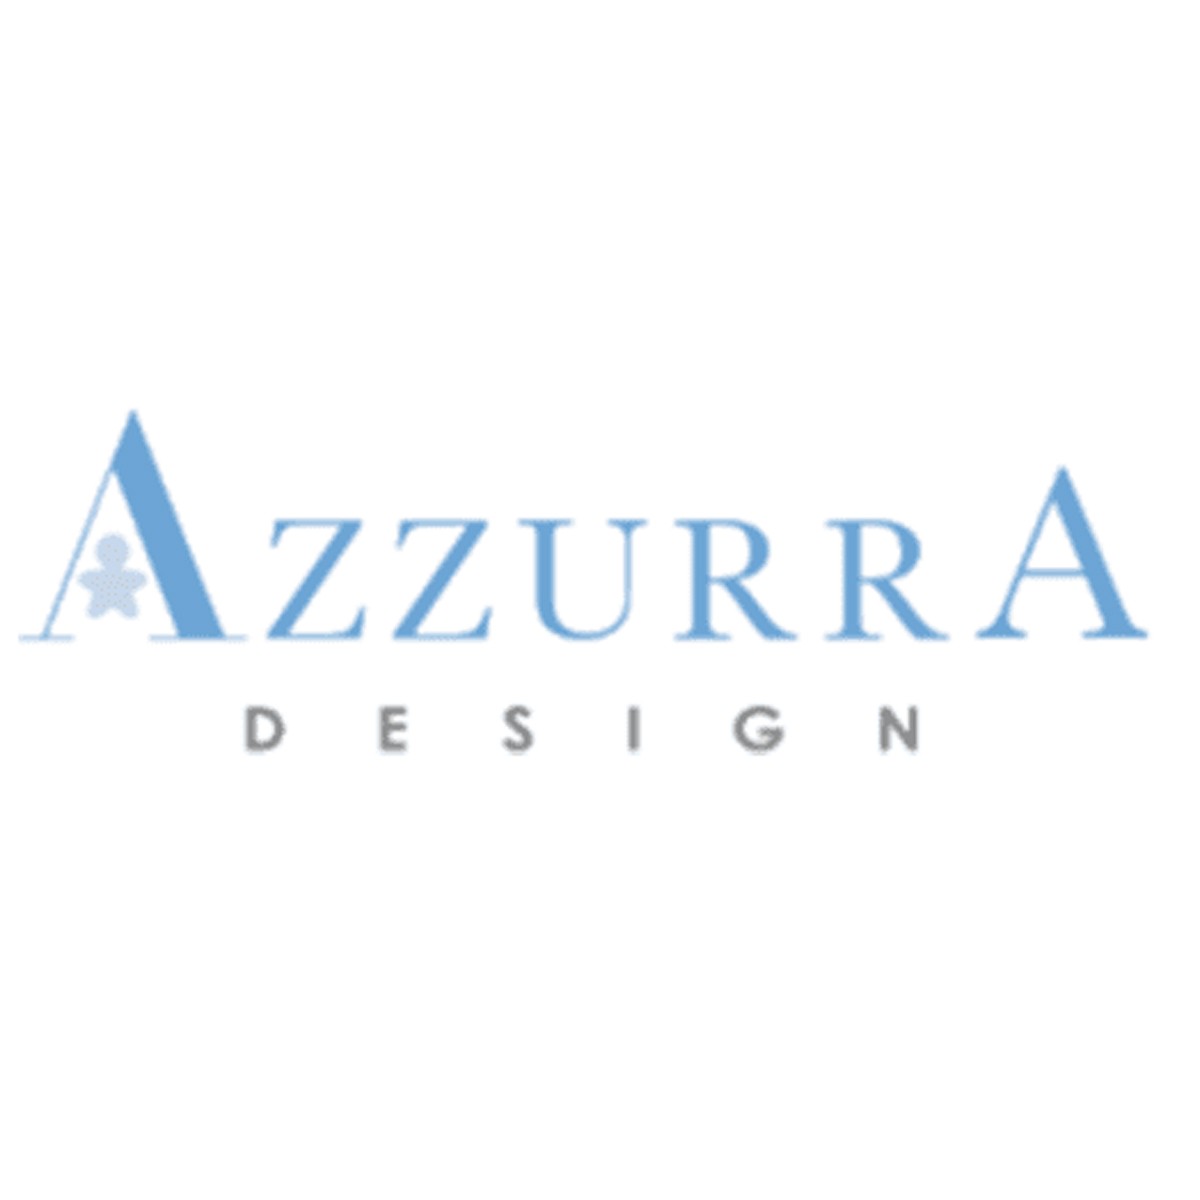 Azzurra Design